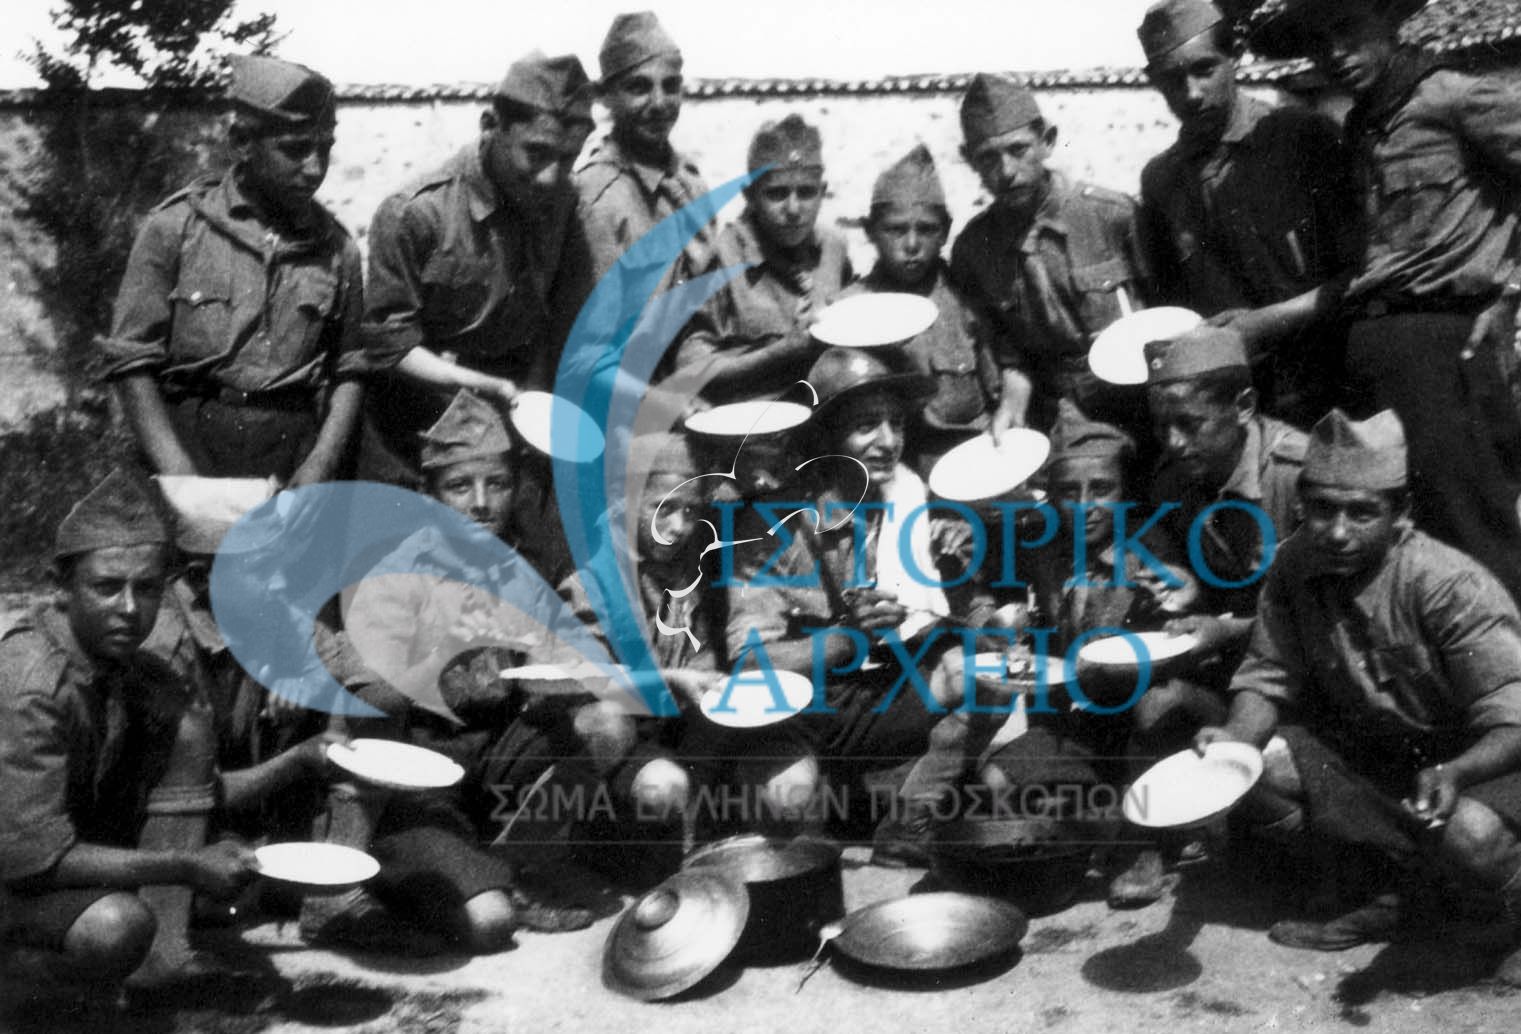 Πρόσκοποι της Ξάνθης σε εκδρομή στη περιοχή Χιονίστρα τον Ιούλιου του 1933 αναμένοντας να γεμίσουν με μεσημεριανό φαγητό τα σκεύη τους.